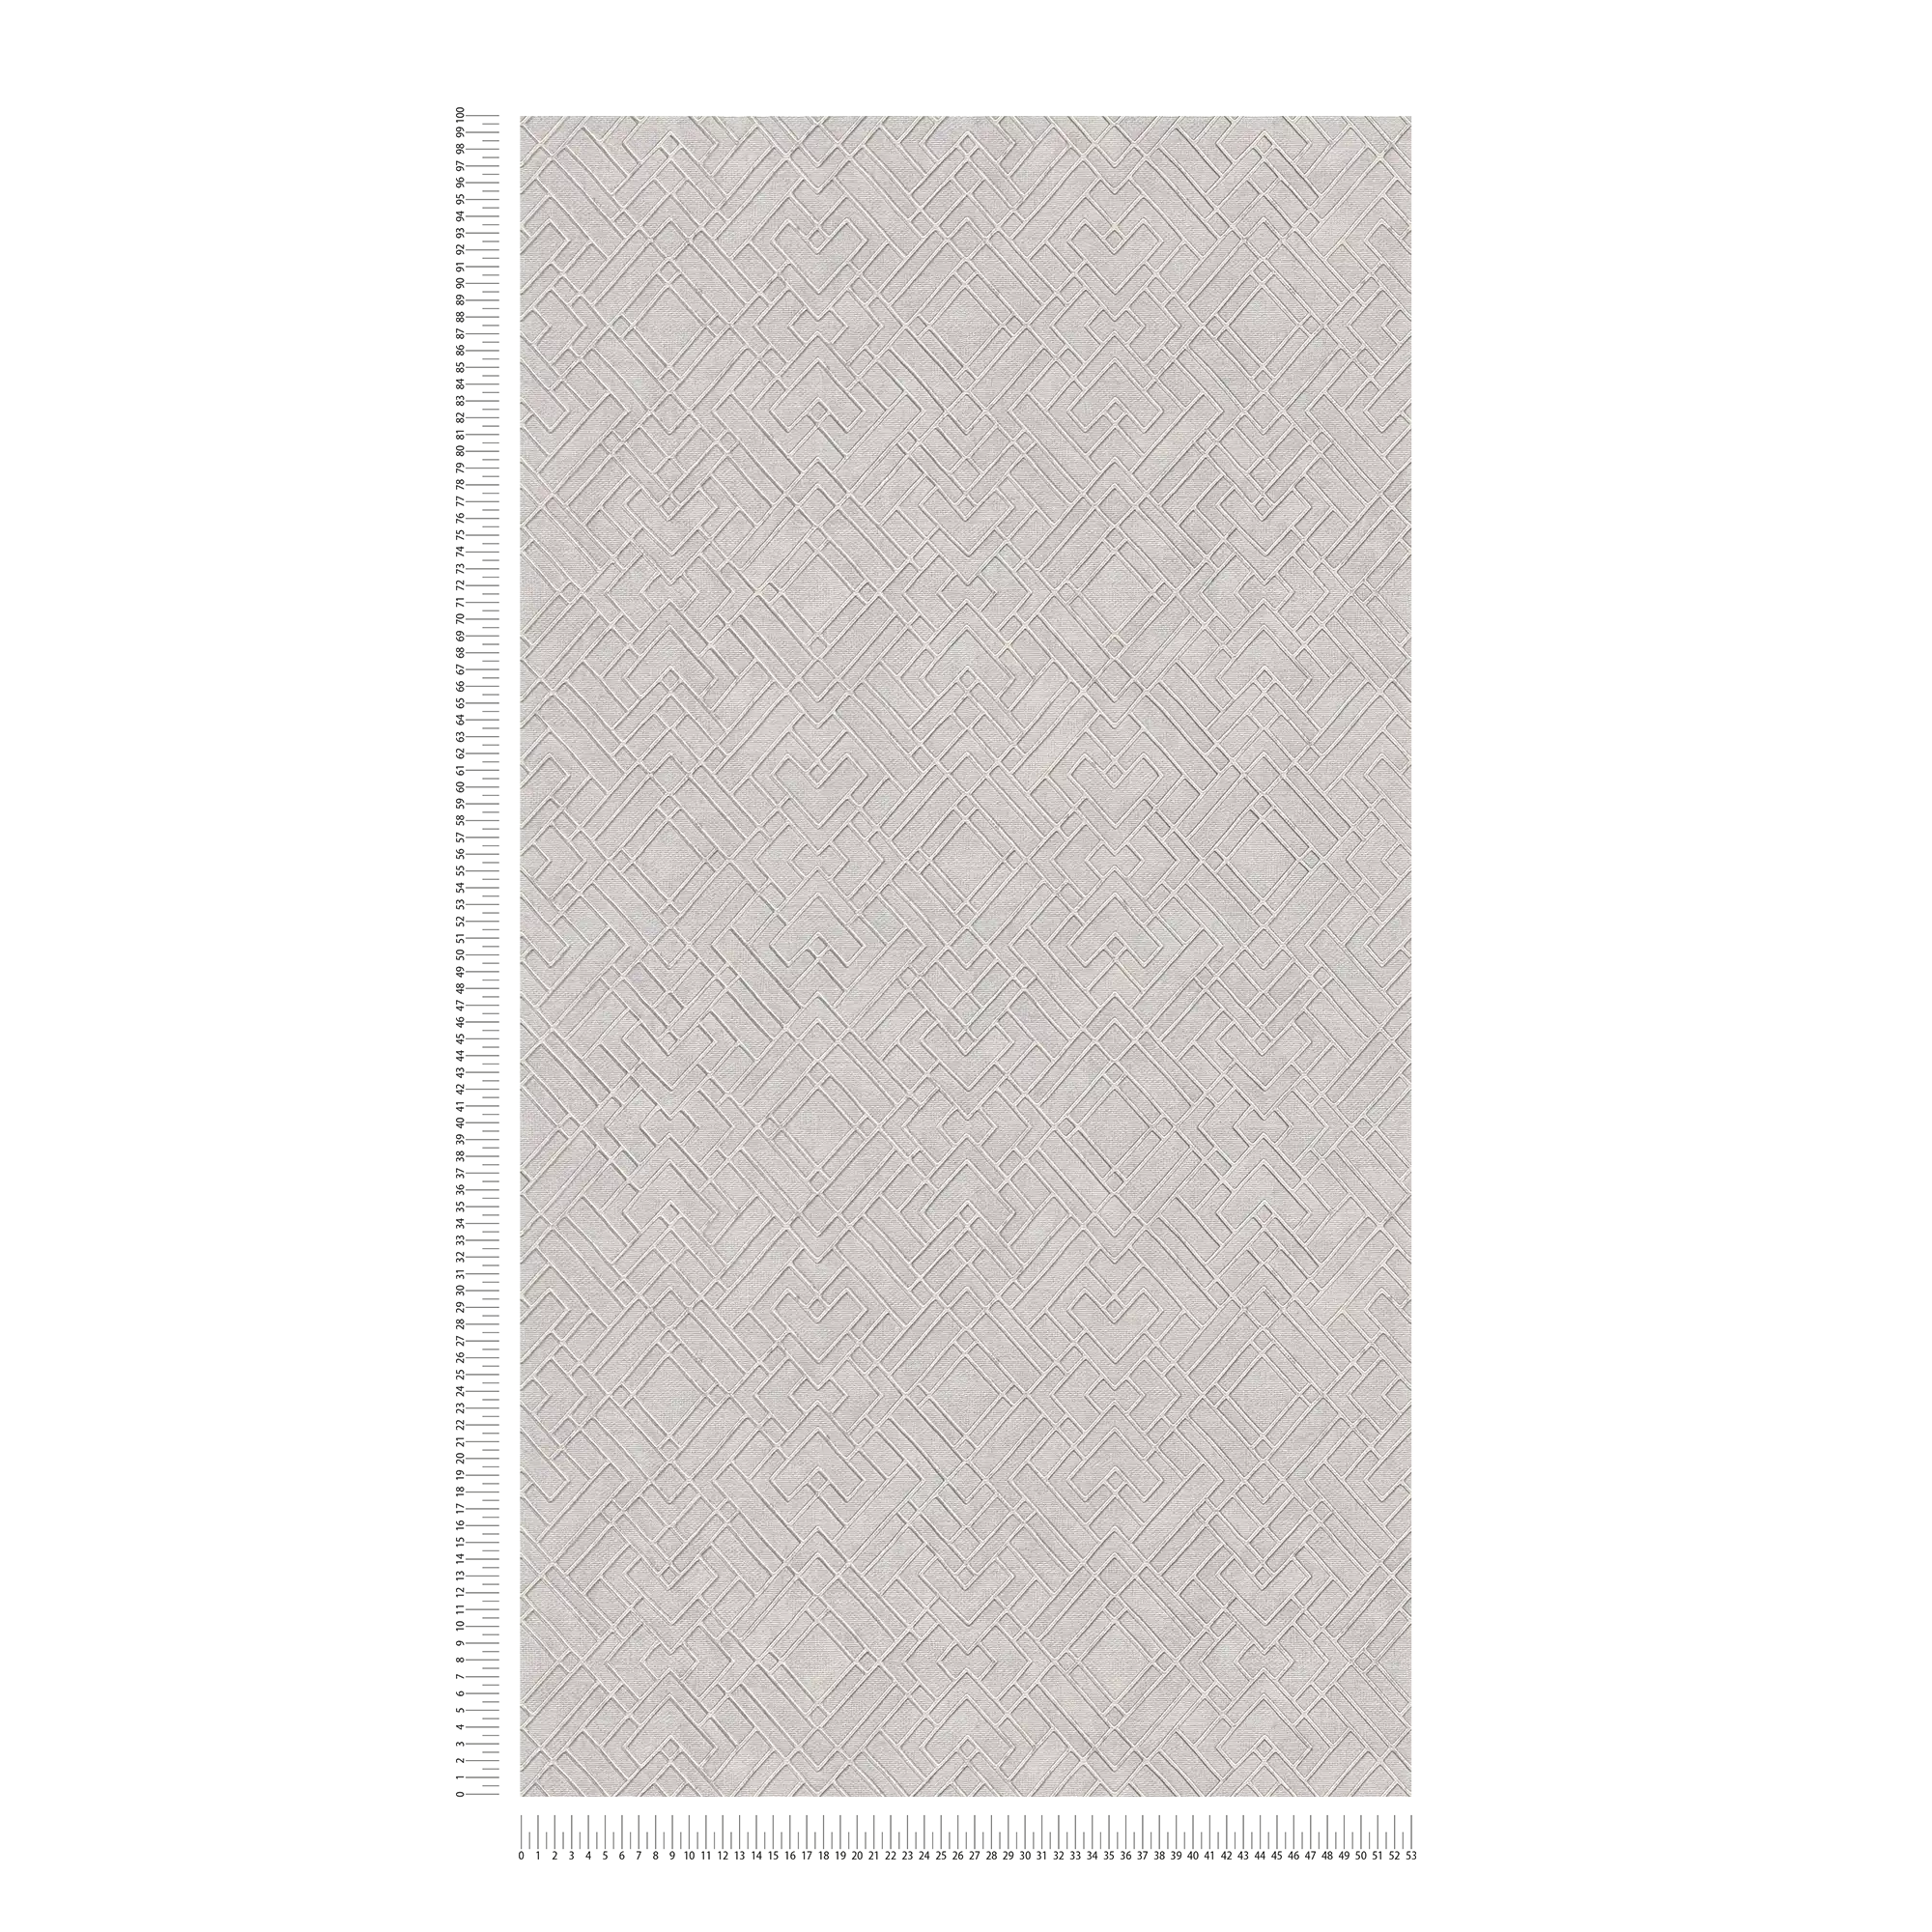             Carta da parati argentata con grafica a linee metalliche - grigio
        